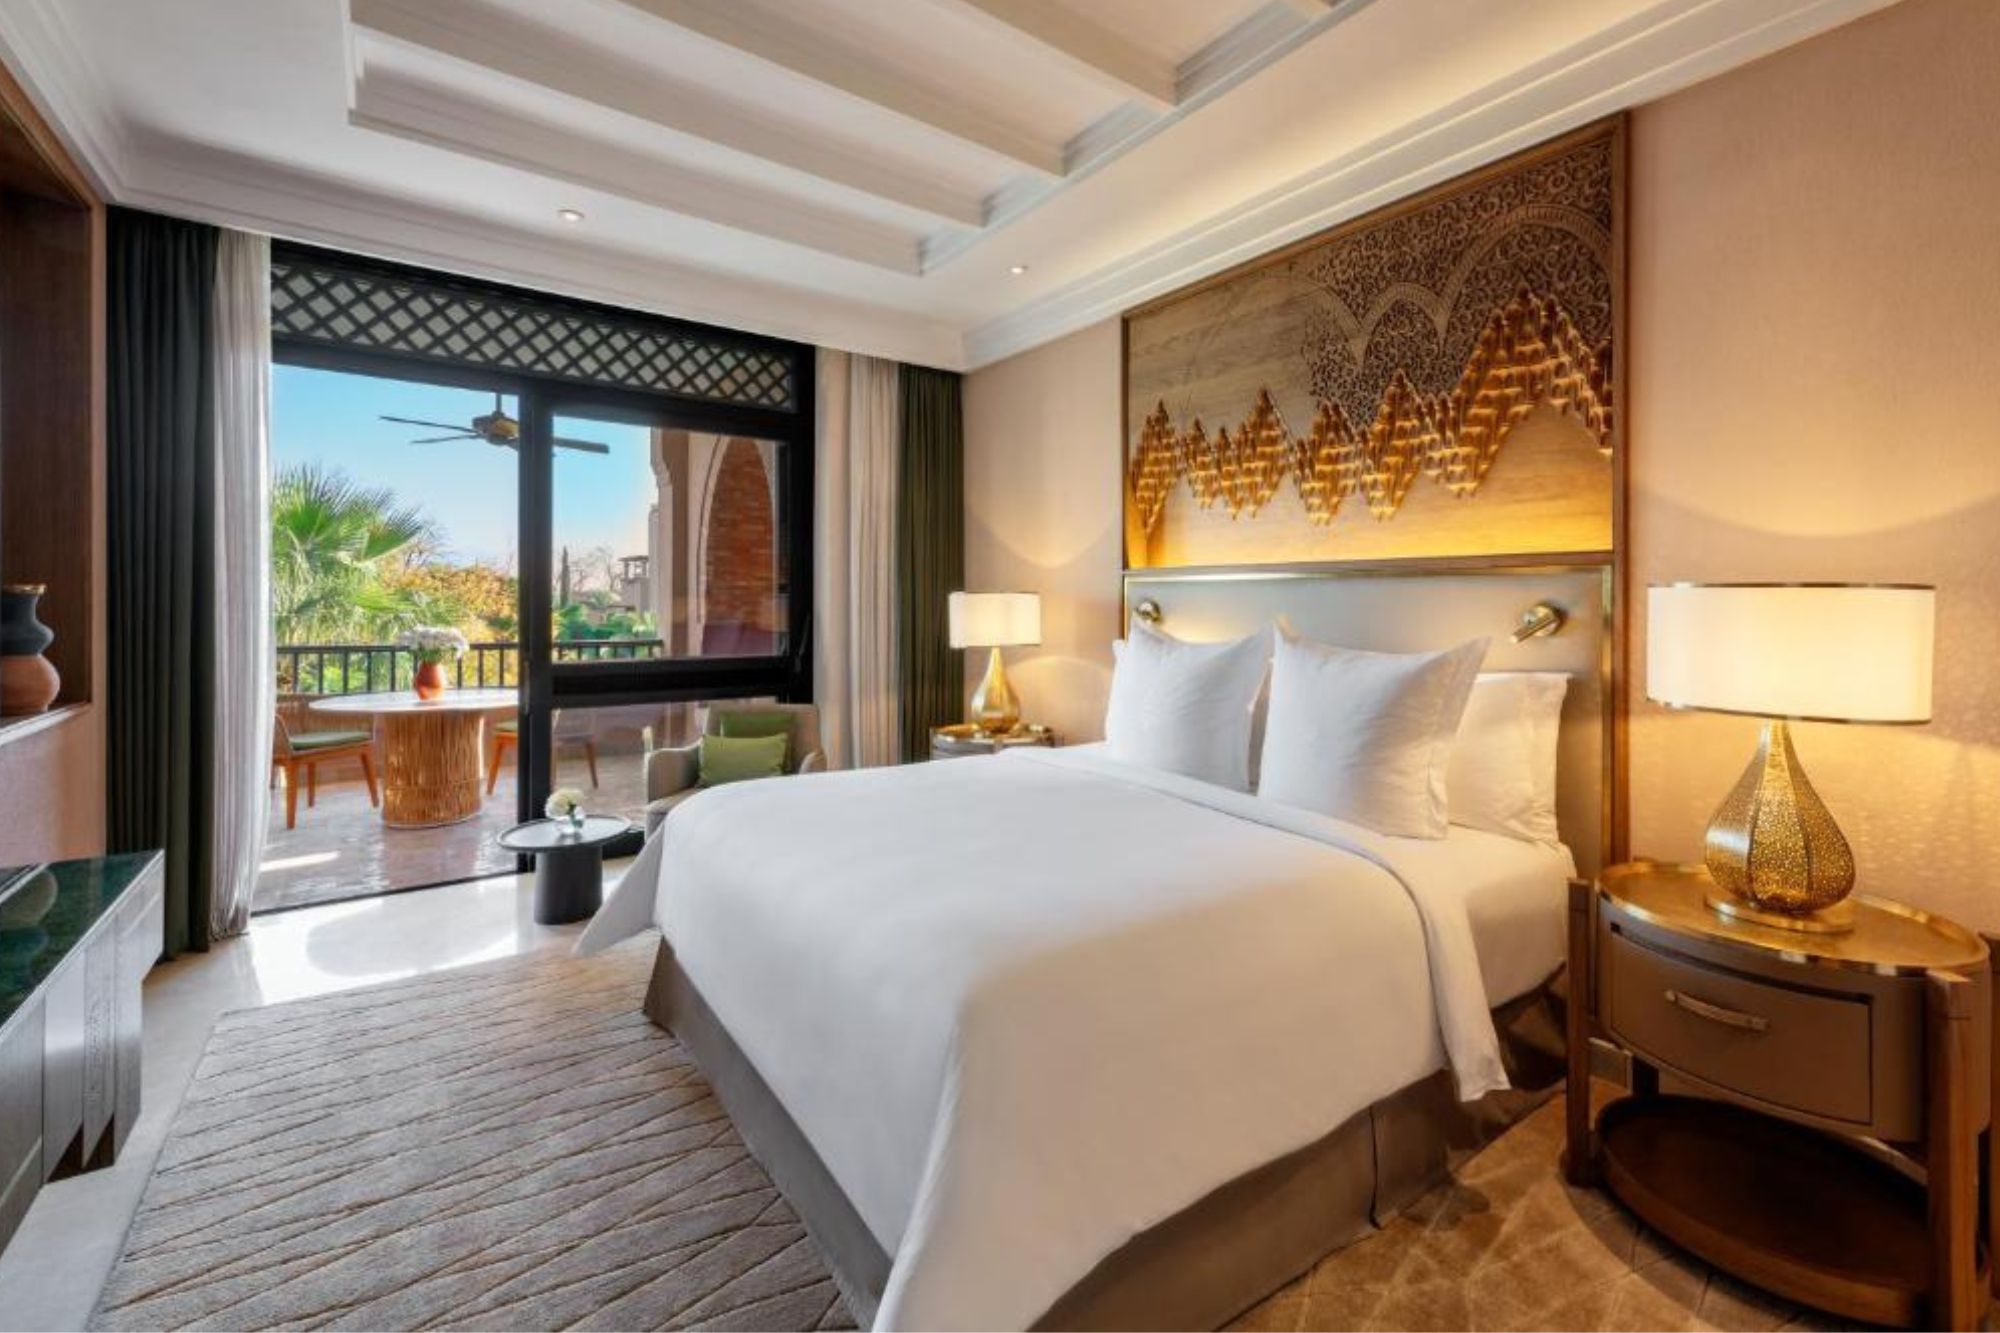 For Reasons Resort Marrakech _Hotel de luxe (2)